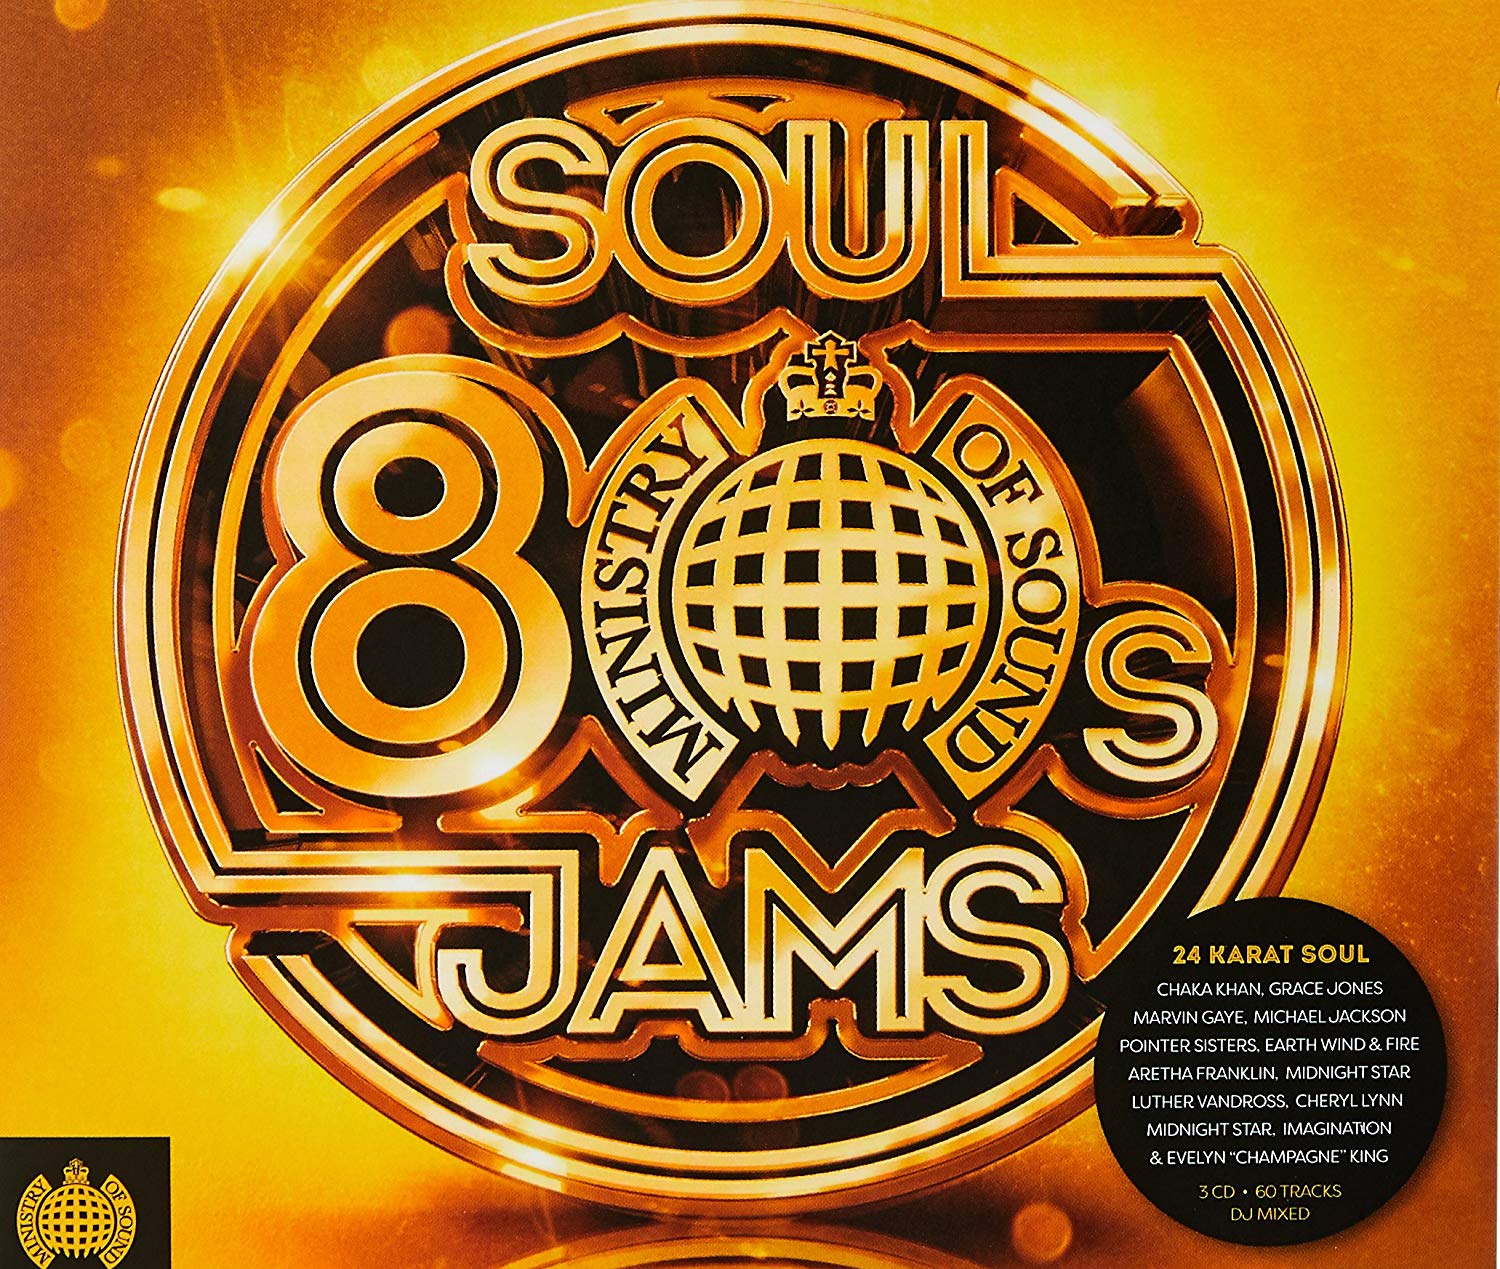 Audio Cd Ministry Of Sound: 80s Soul Jams / Various NUOVO SIGILLATO, EDIZIONE DEL 22/06/2018 SUBITO DISPONIBILE